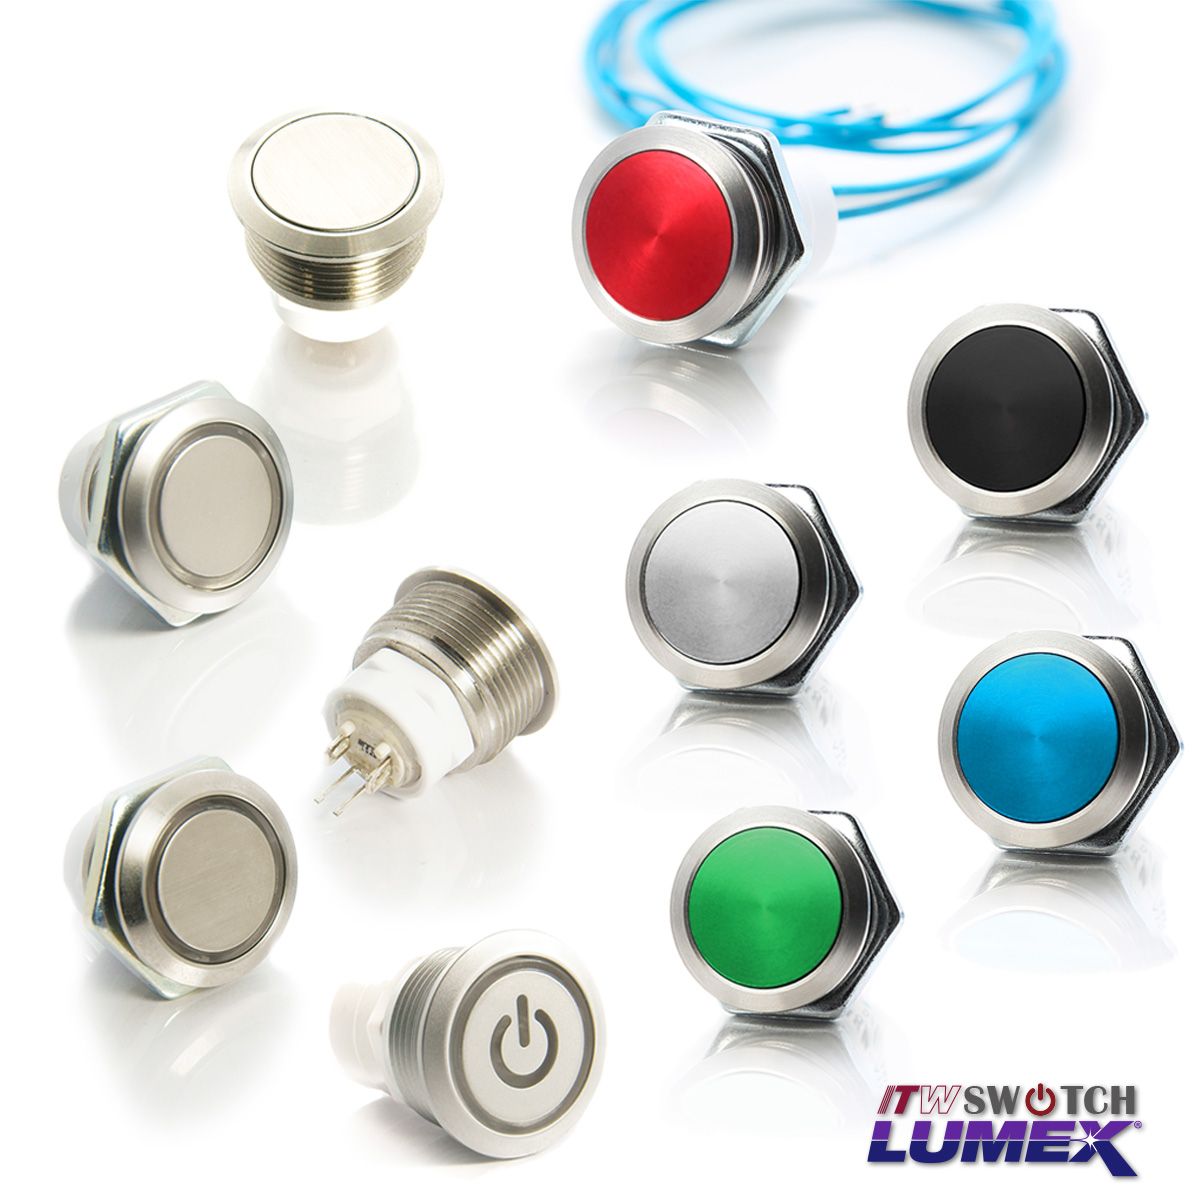 ITW Lumex Switchoffre interruttori a pulsante con diverse opzioni di design, tutti dotati di un foro nel pannello da 19 mm.